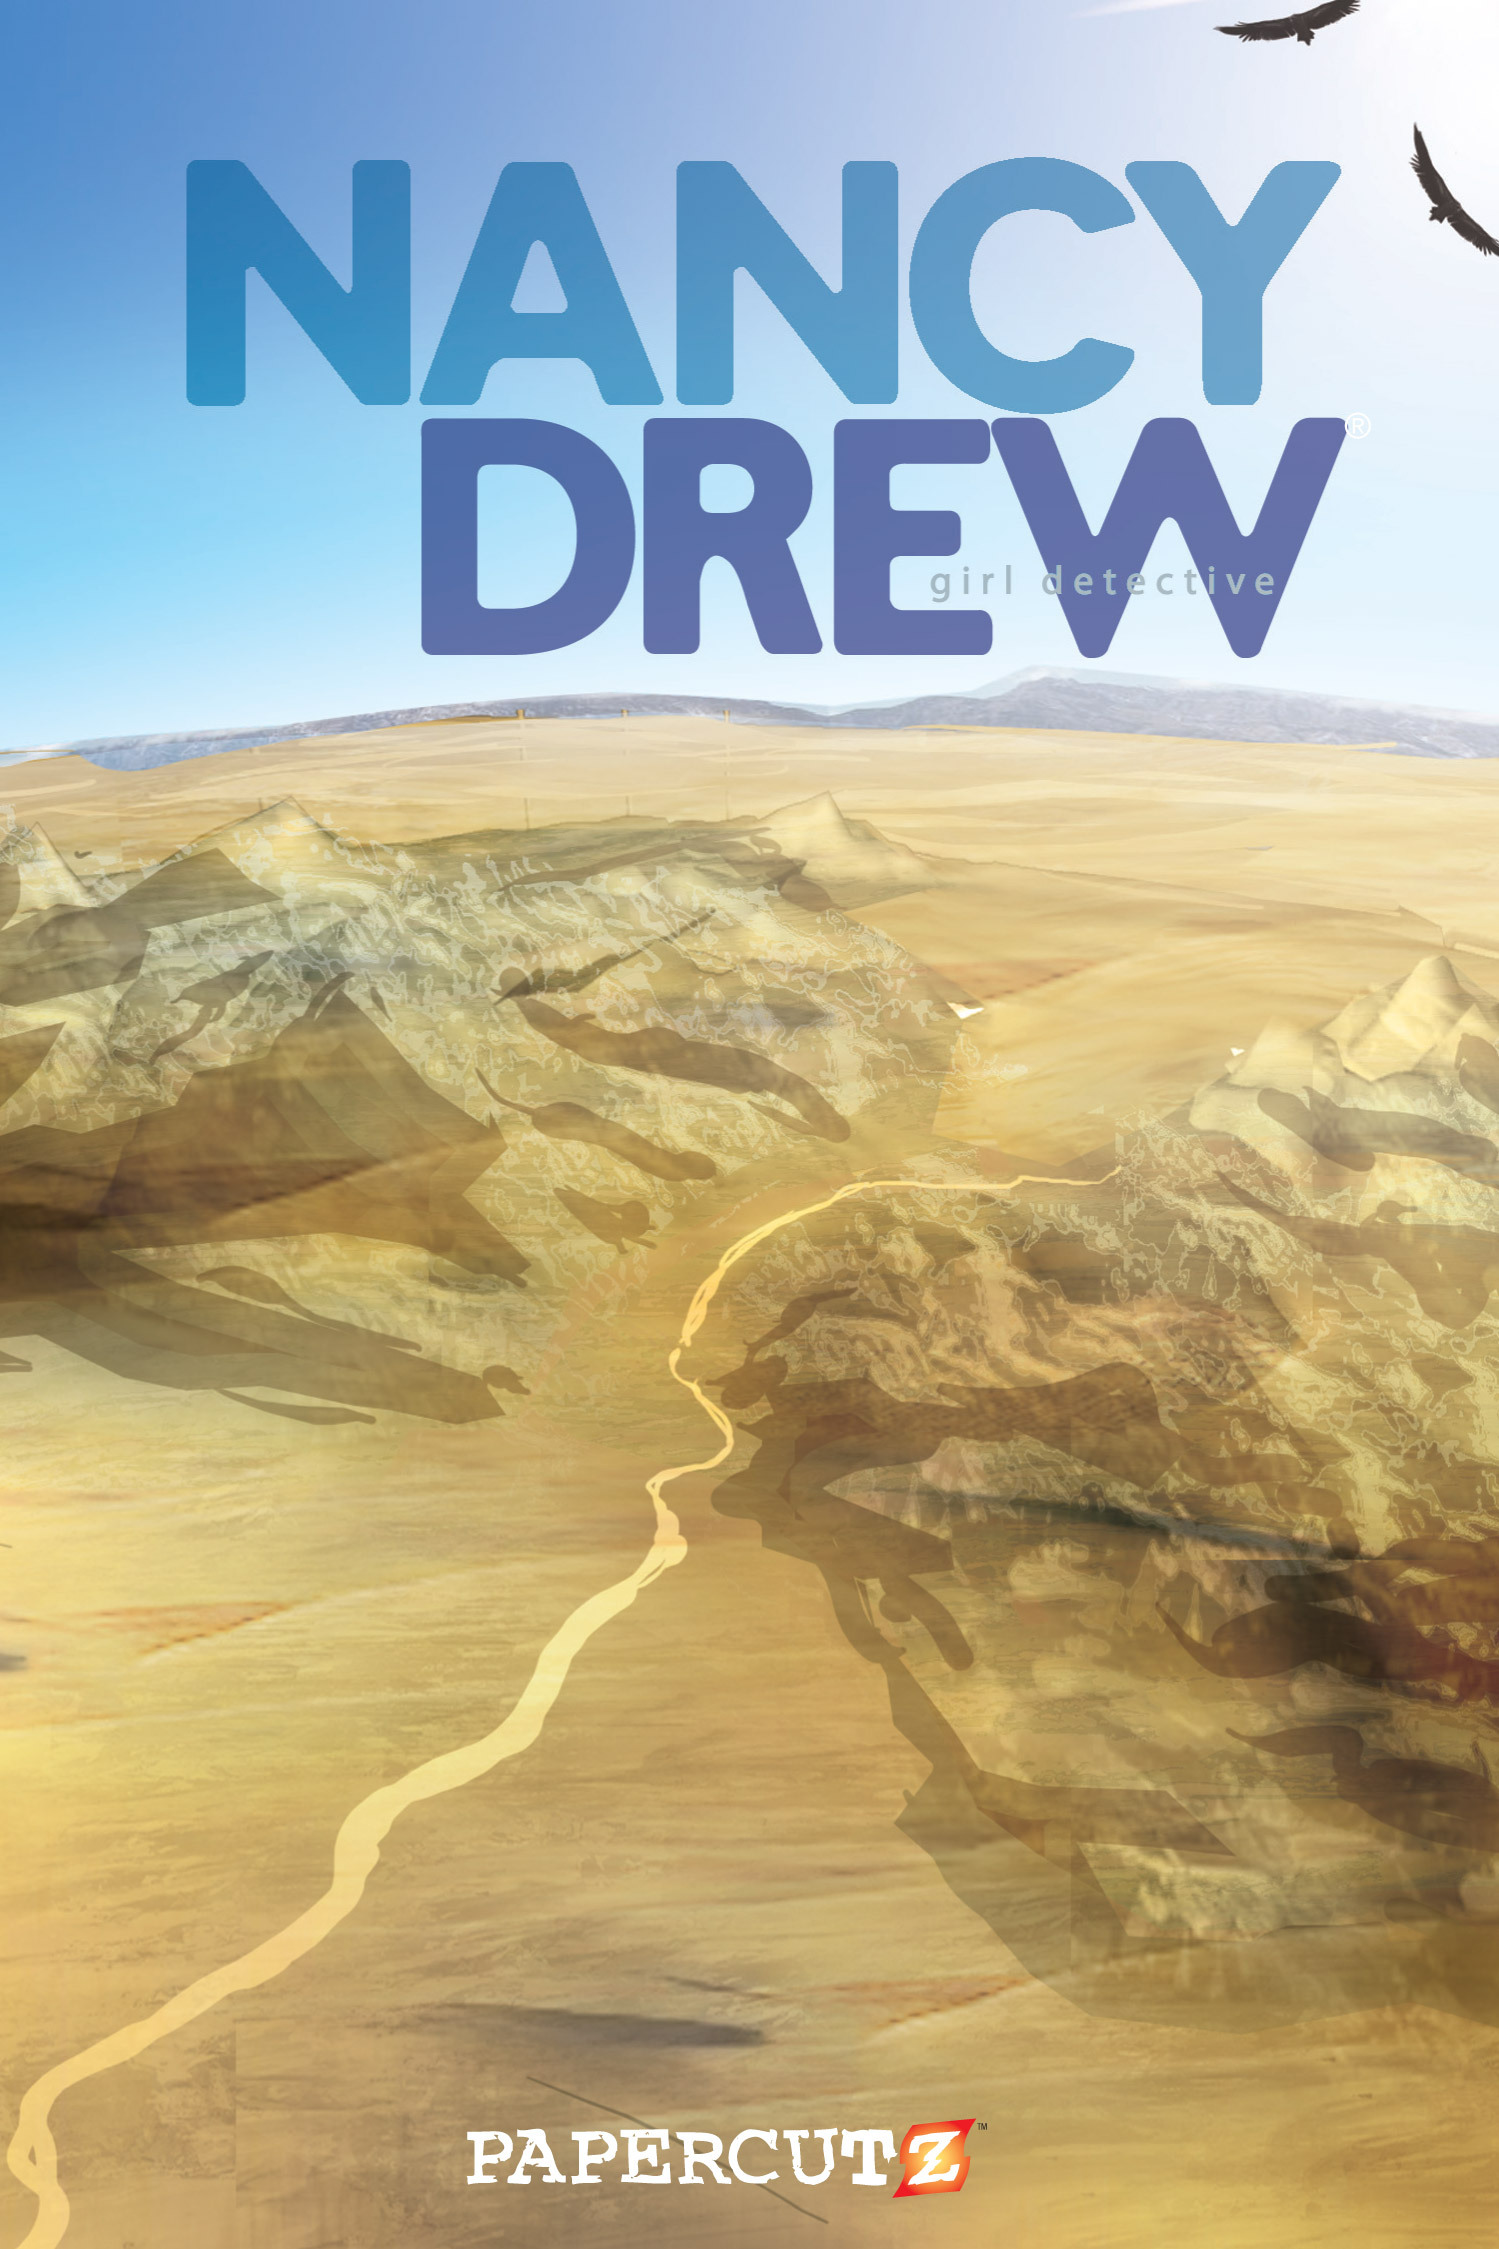 Read online Nancy Drew comic -  Issue #11 - 2